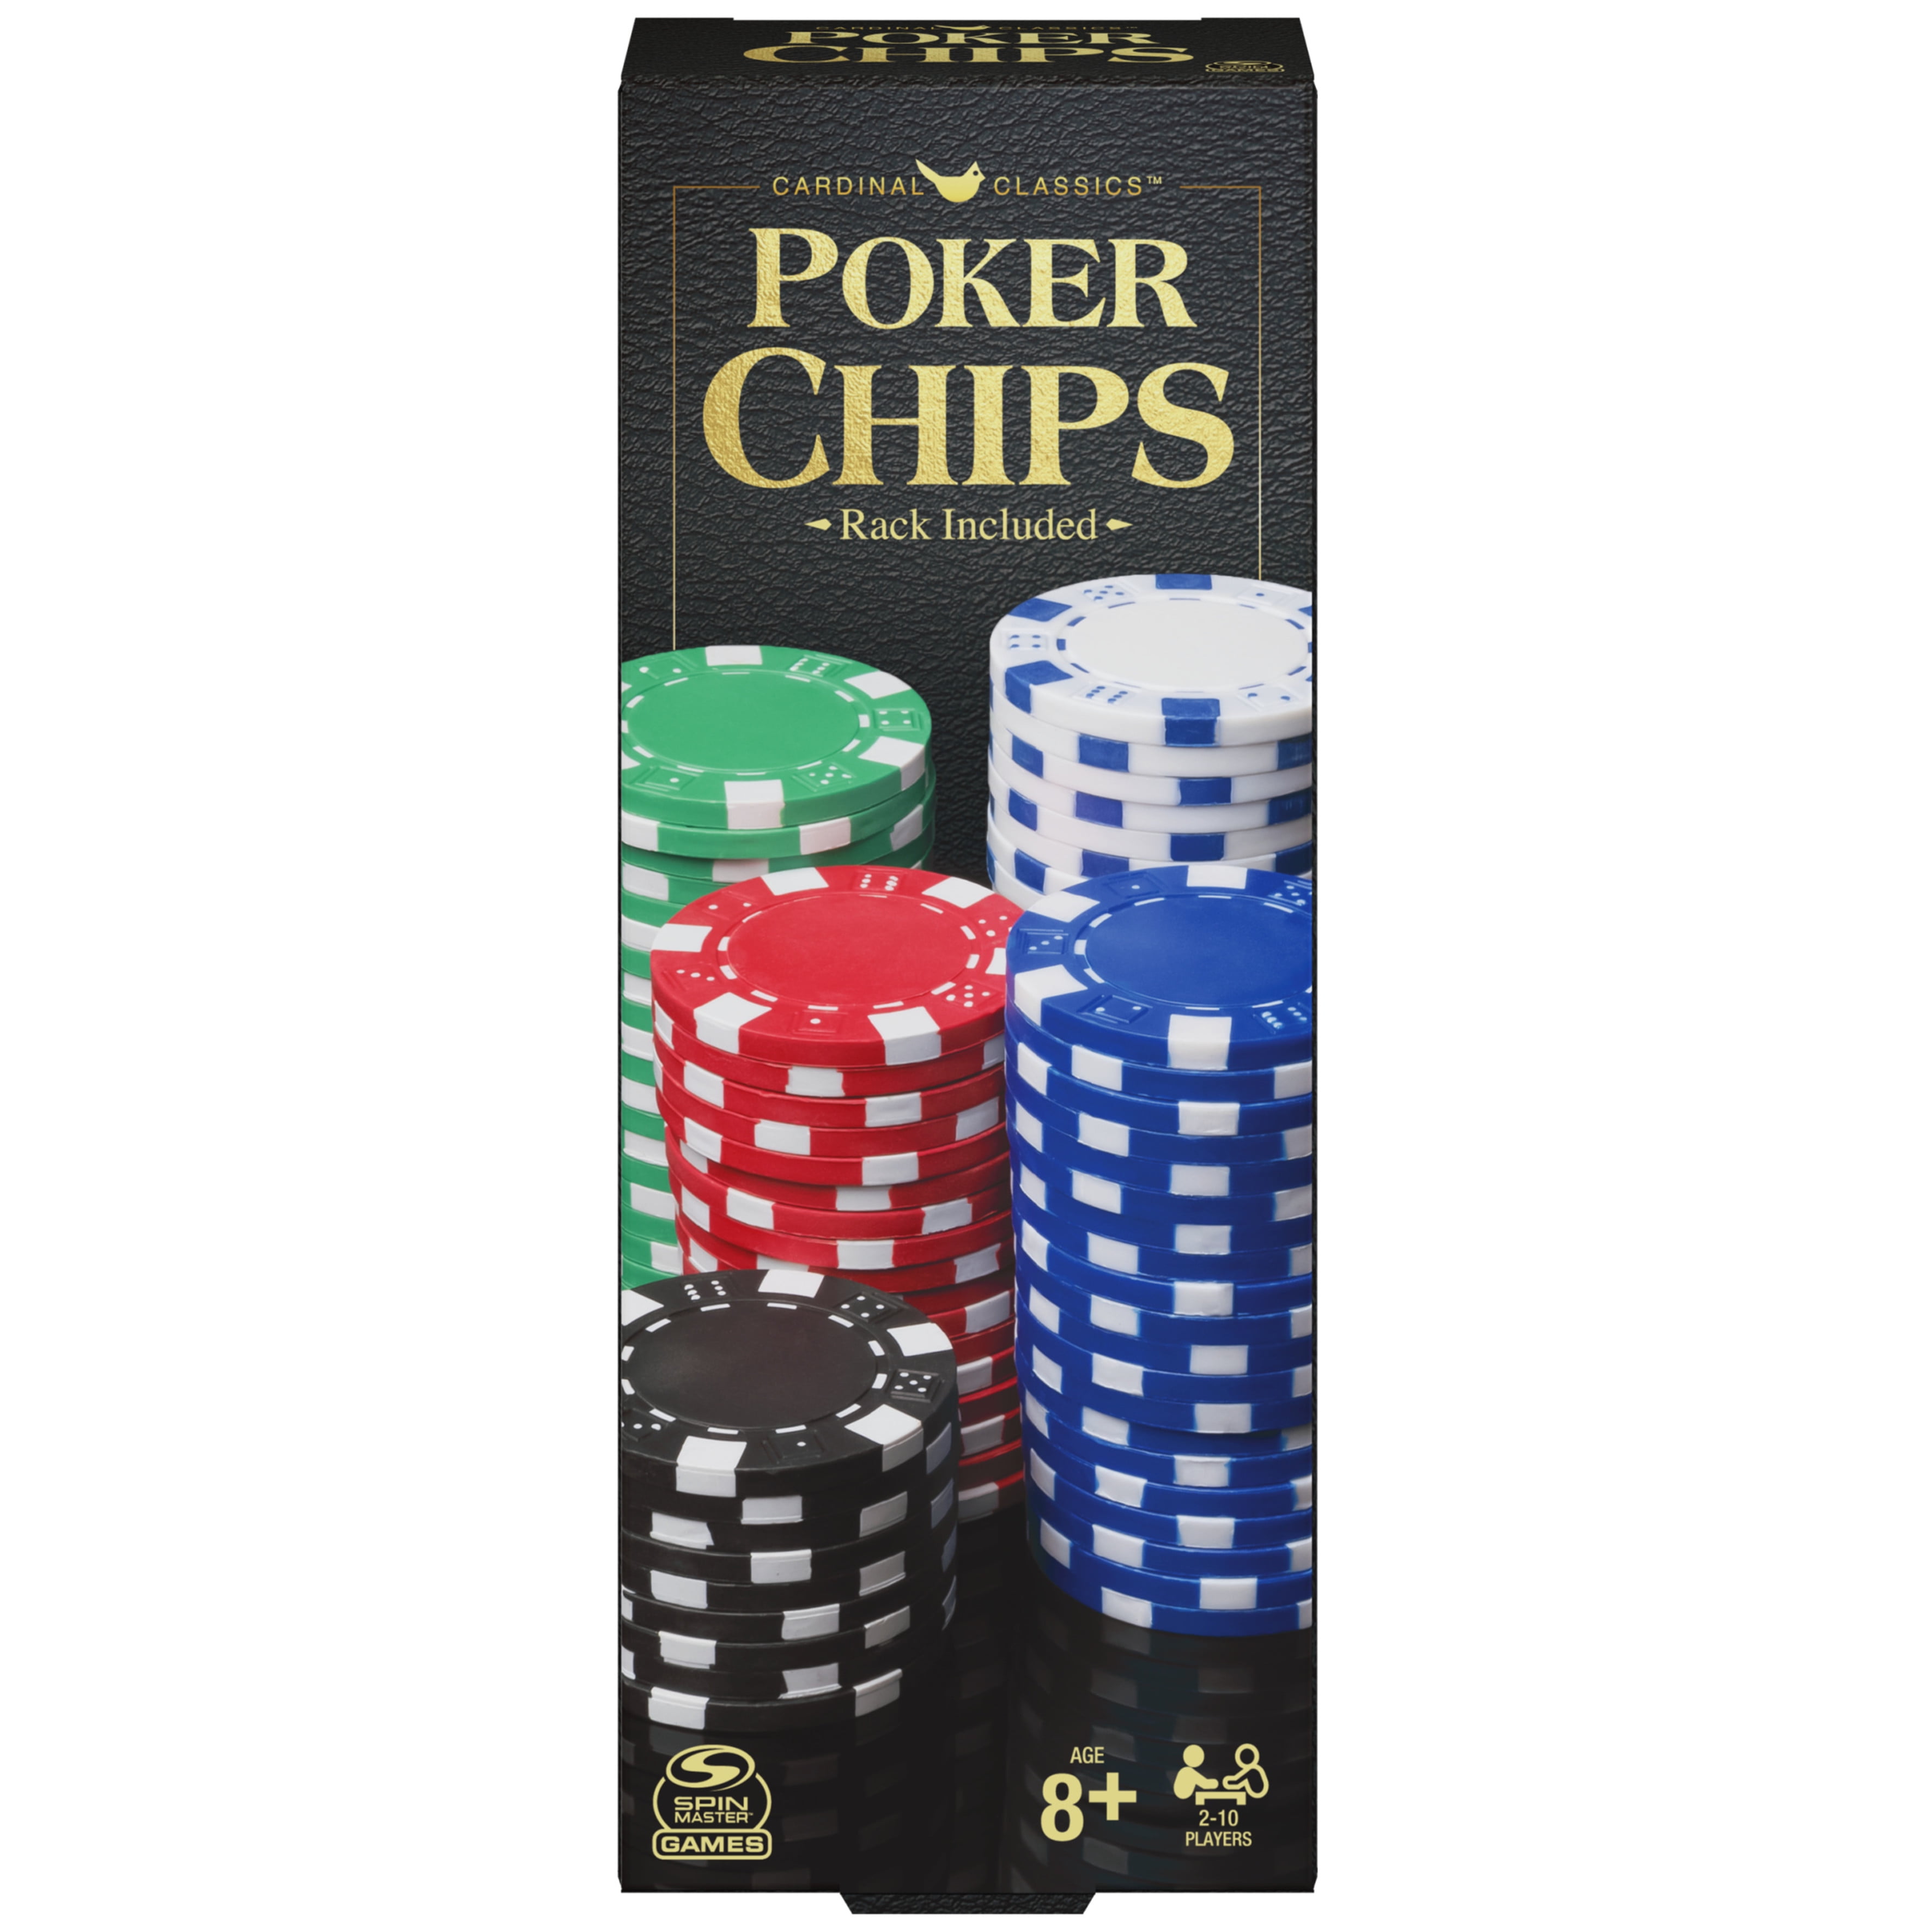 New POKER CHIP SET 100 Poker Chips Vegas Brand NEW IN BOX Red White Blue 